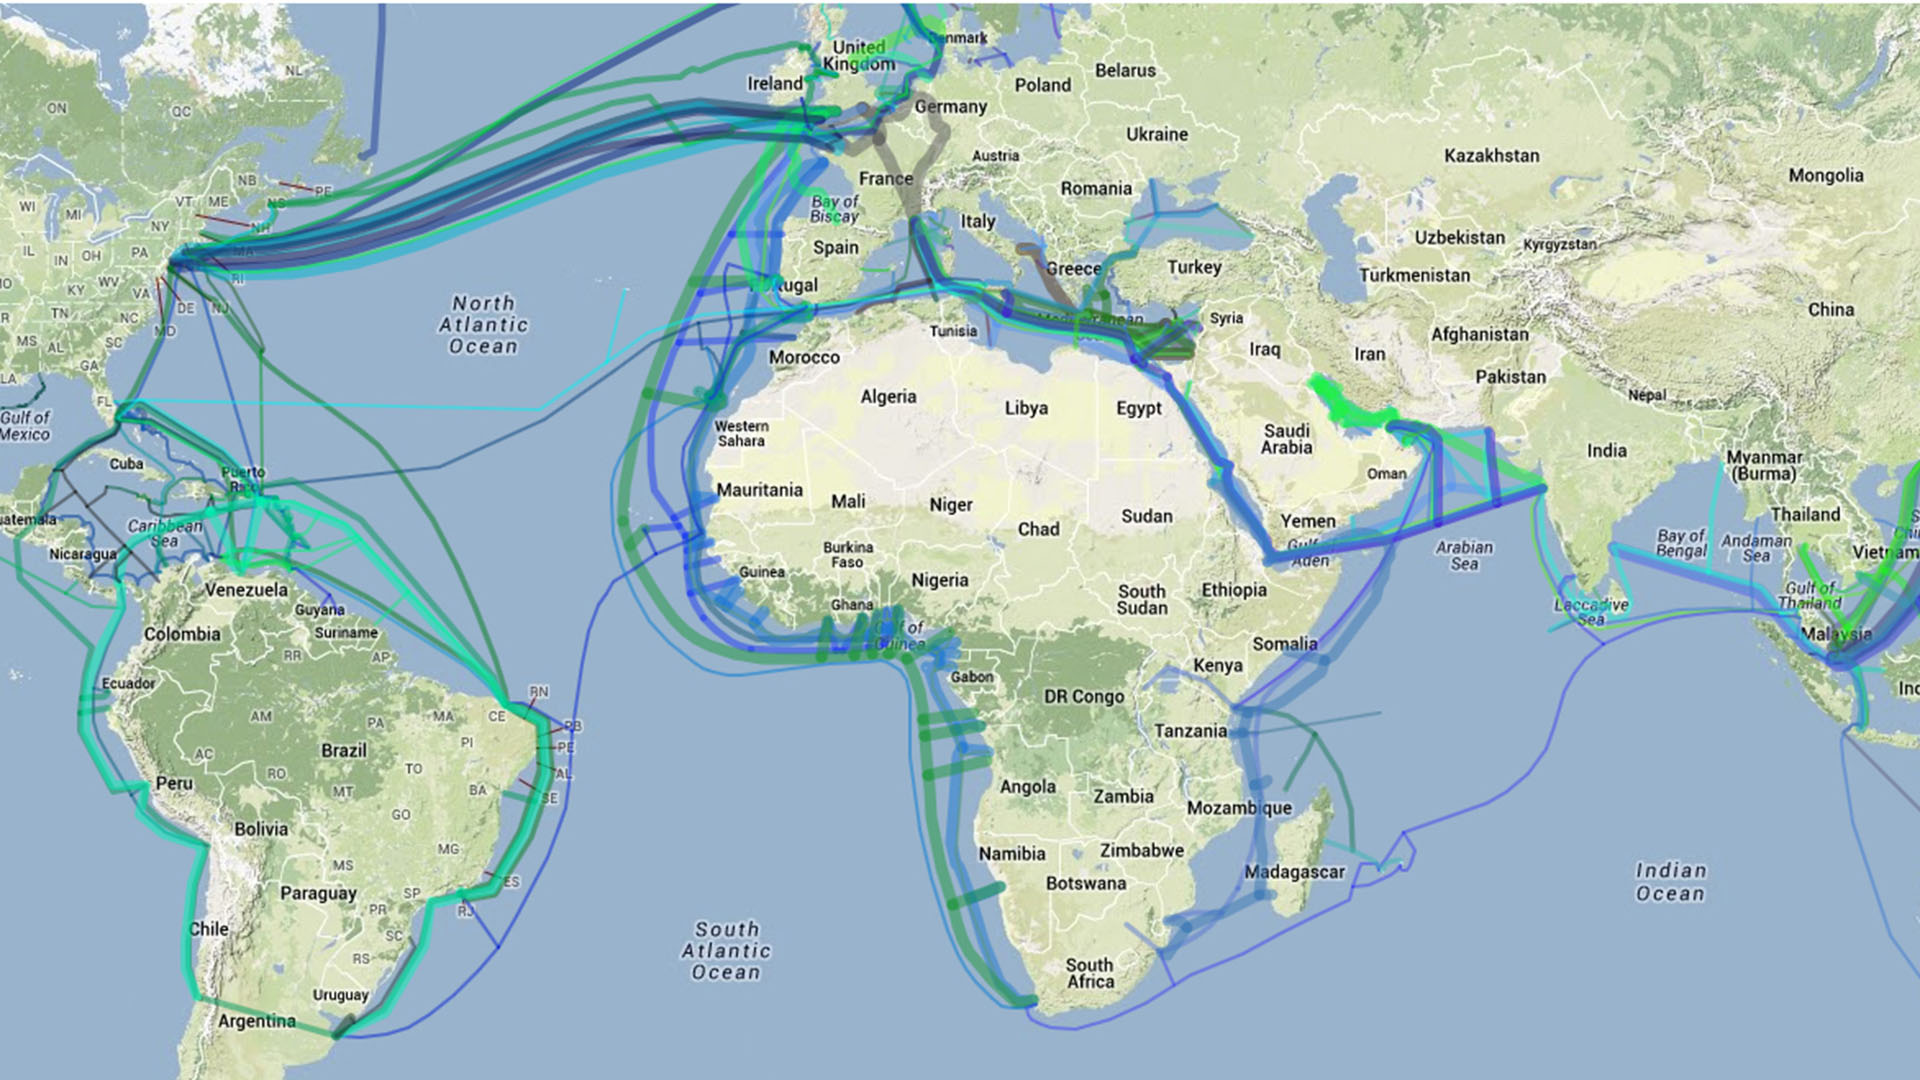 Strategisch gute Internetanbindung durch Glasfaser Seekabel mit allen Kontinenten weltweit. Durch das (MAC) Mid Atlantic Crossing schnelle Anbindung nach Lateinamerika.